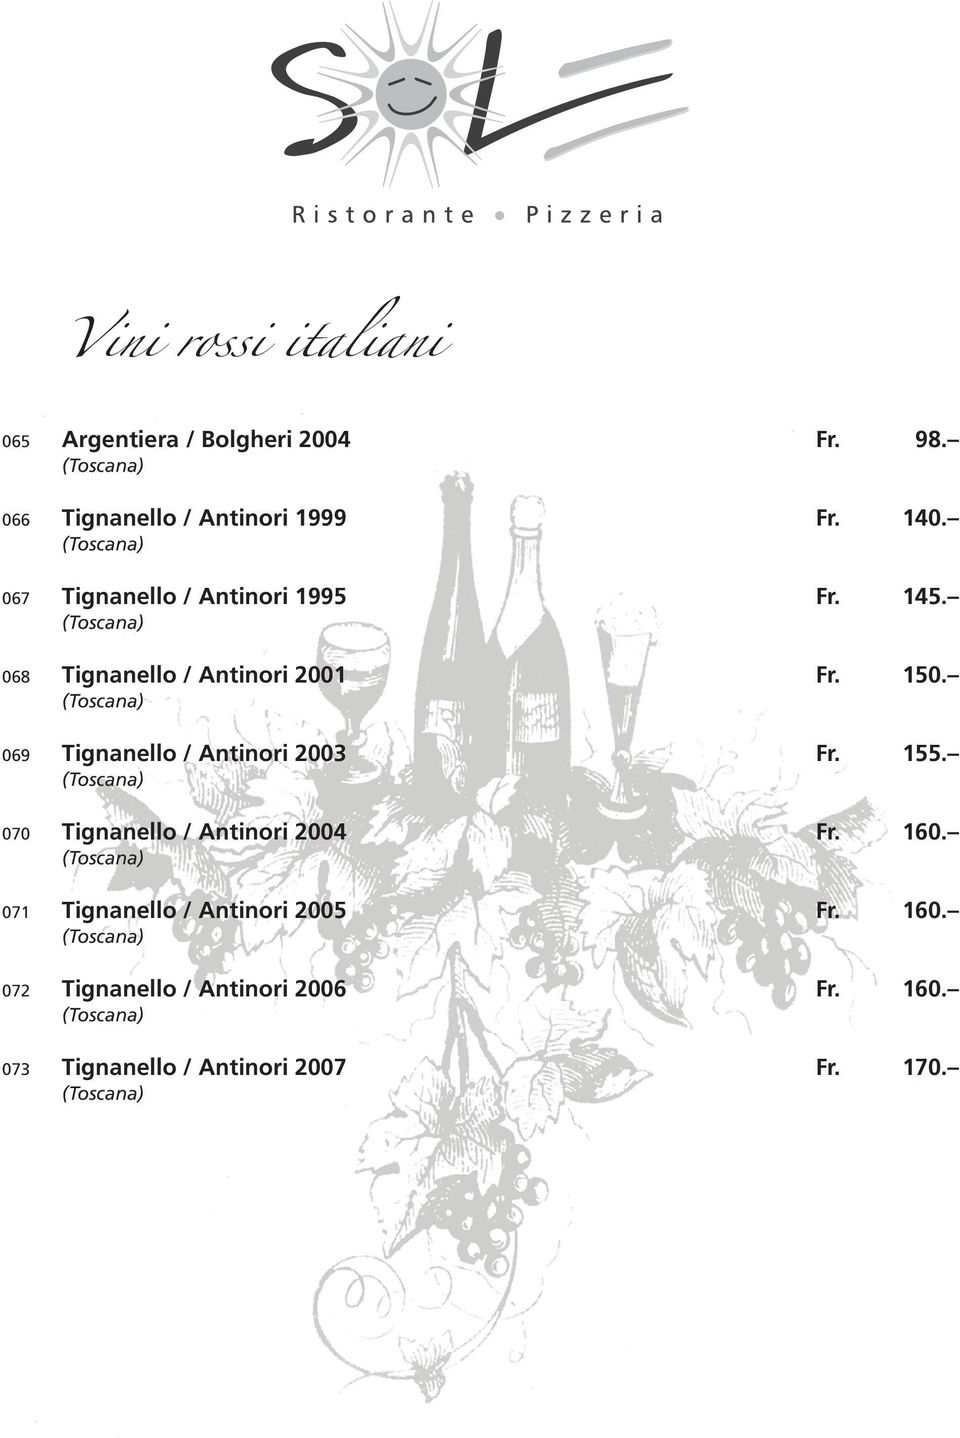 069 Tignanello / Antinori 2003 Fr. 155. 070 Tignanello / Antinori 2004 Fr. 160.